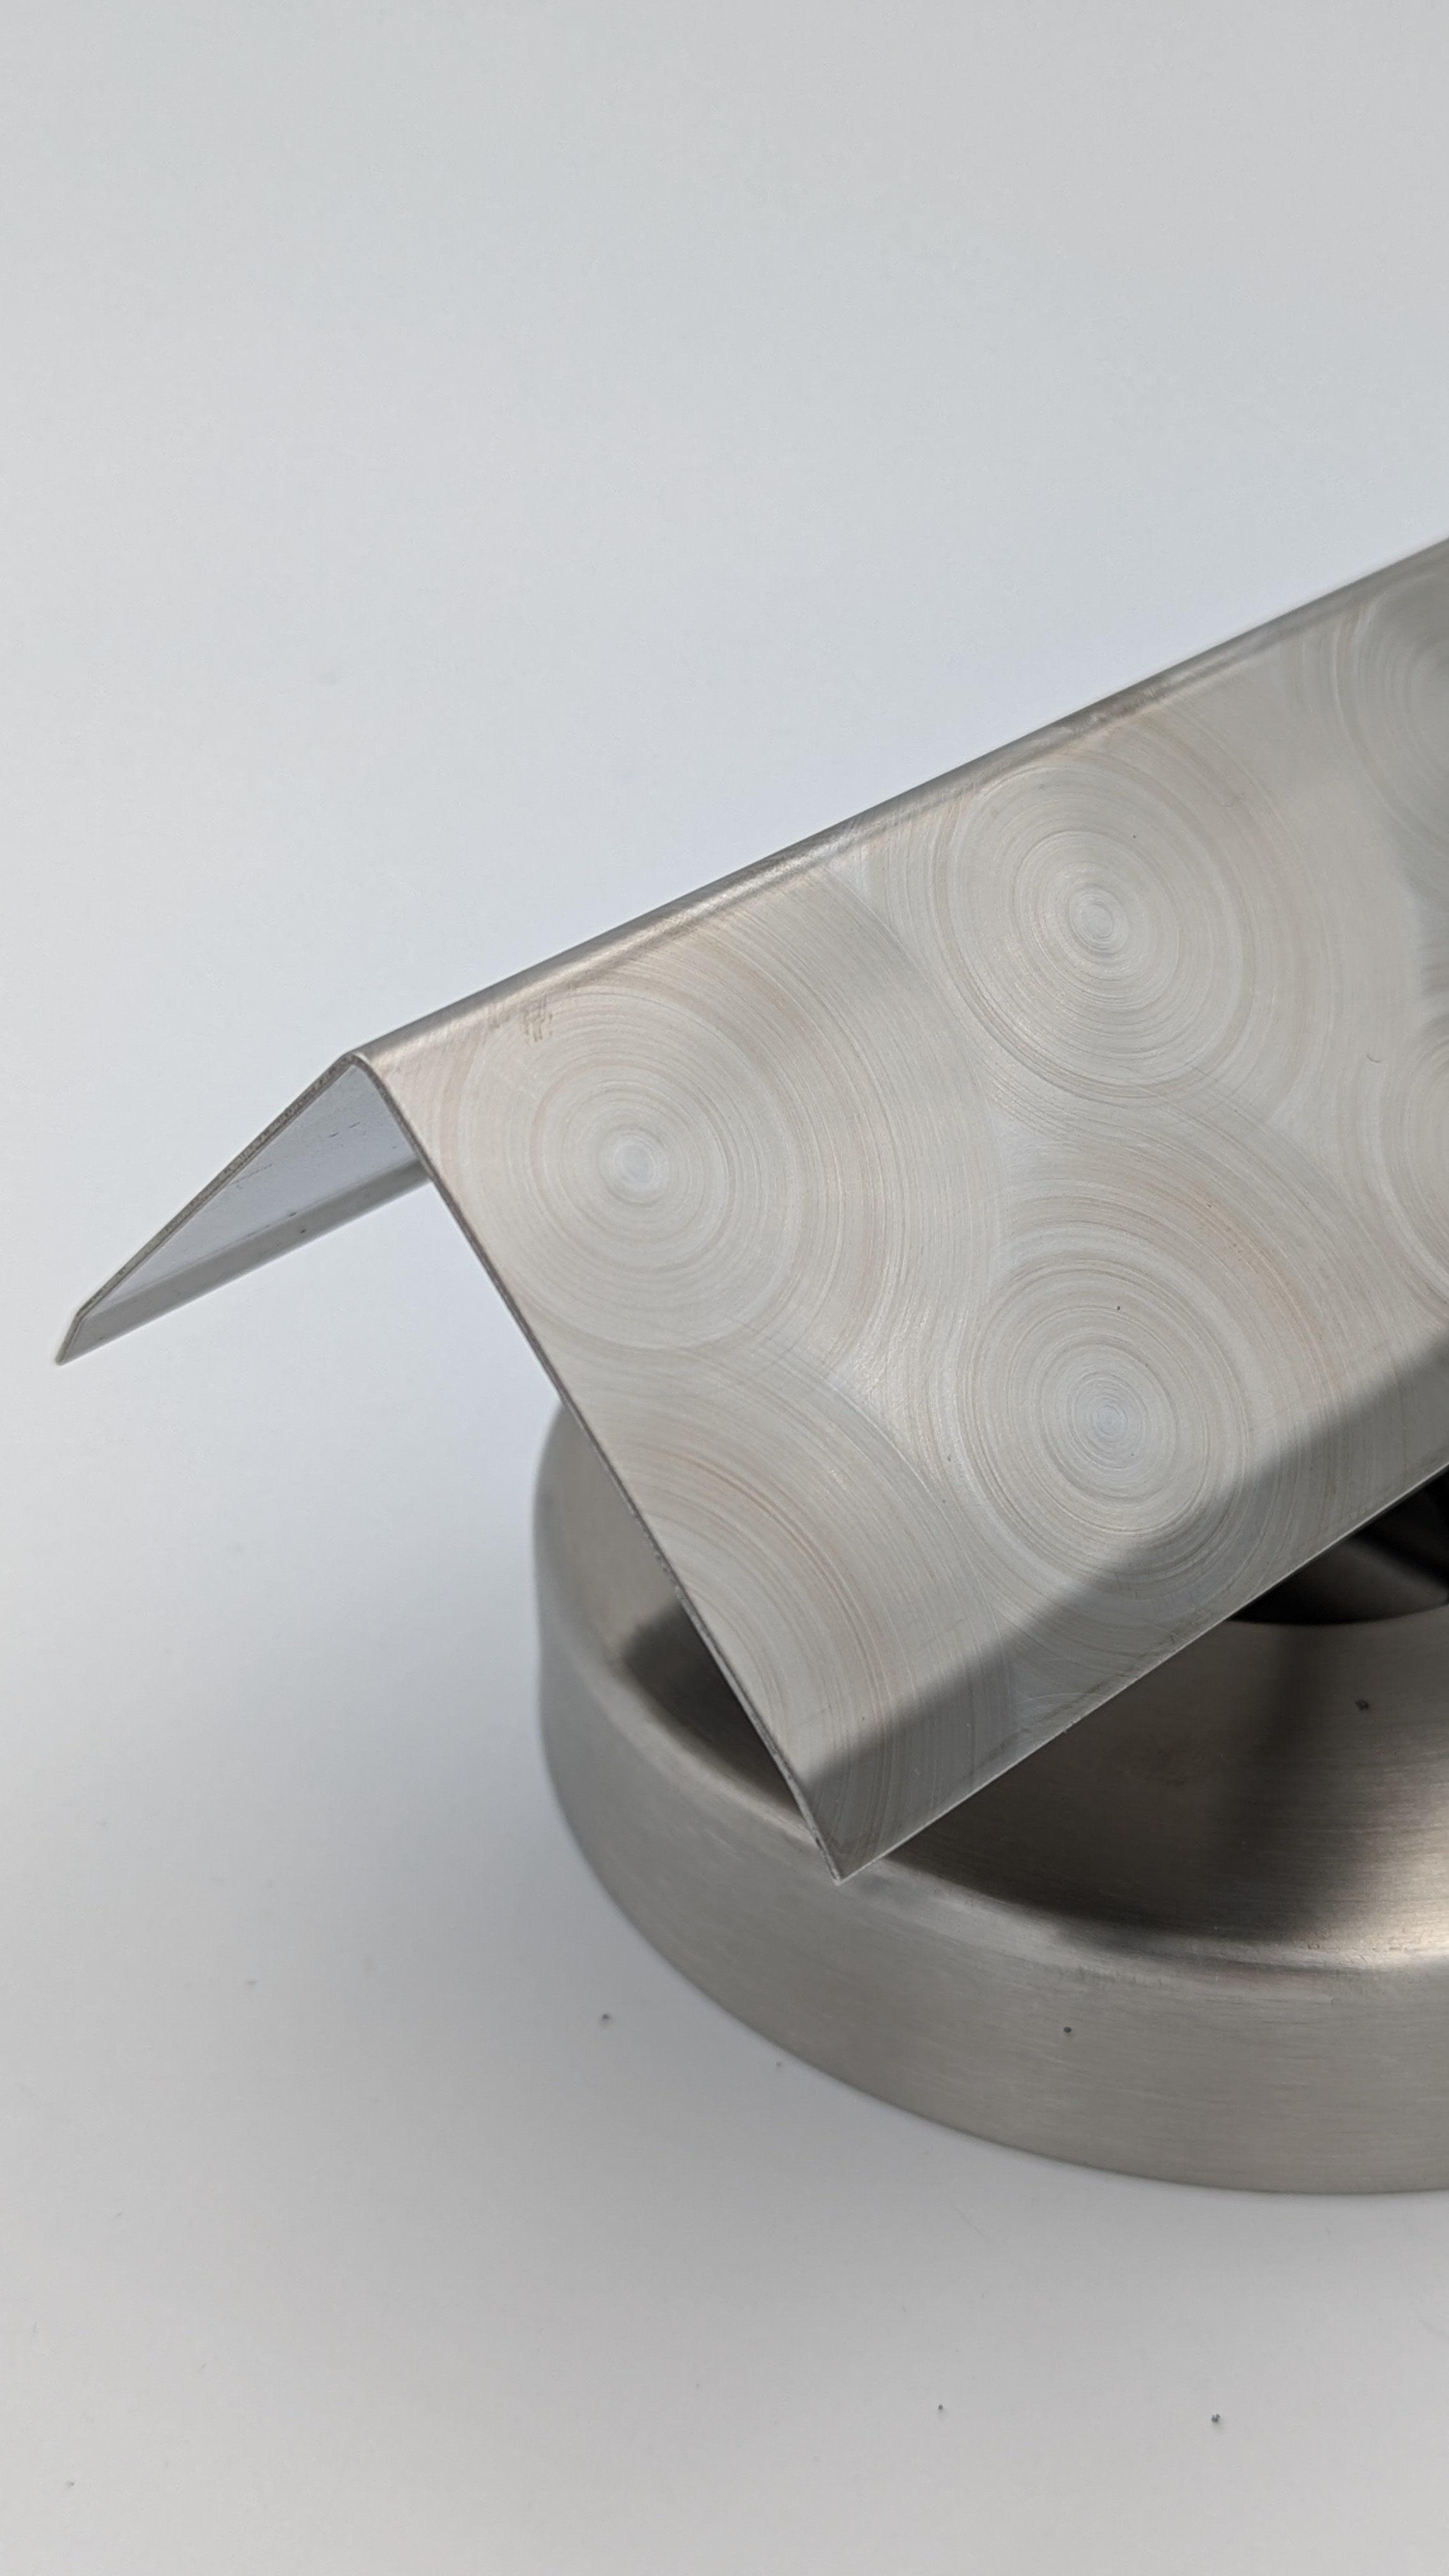 SG Designbleche GmbH - Onlineshop - Edelstahl Winkel D50 marmoriert 1,5mm